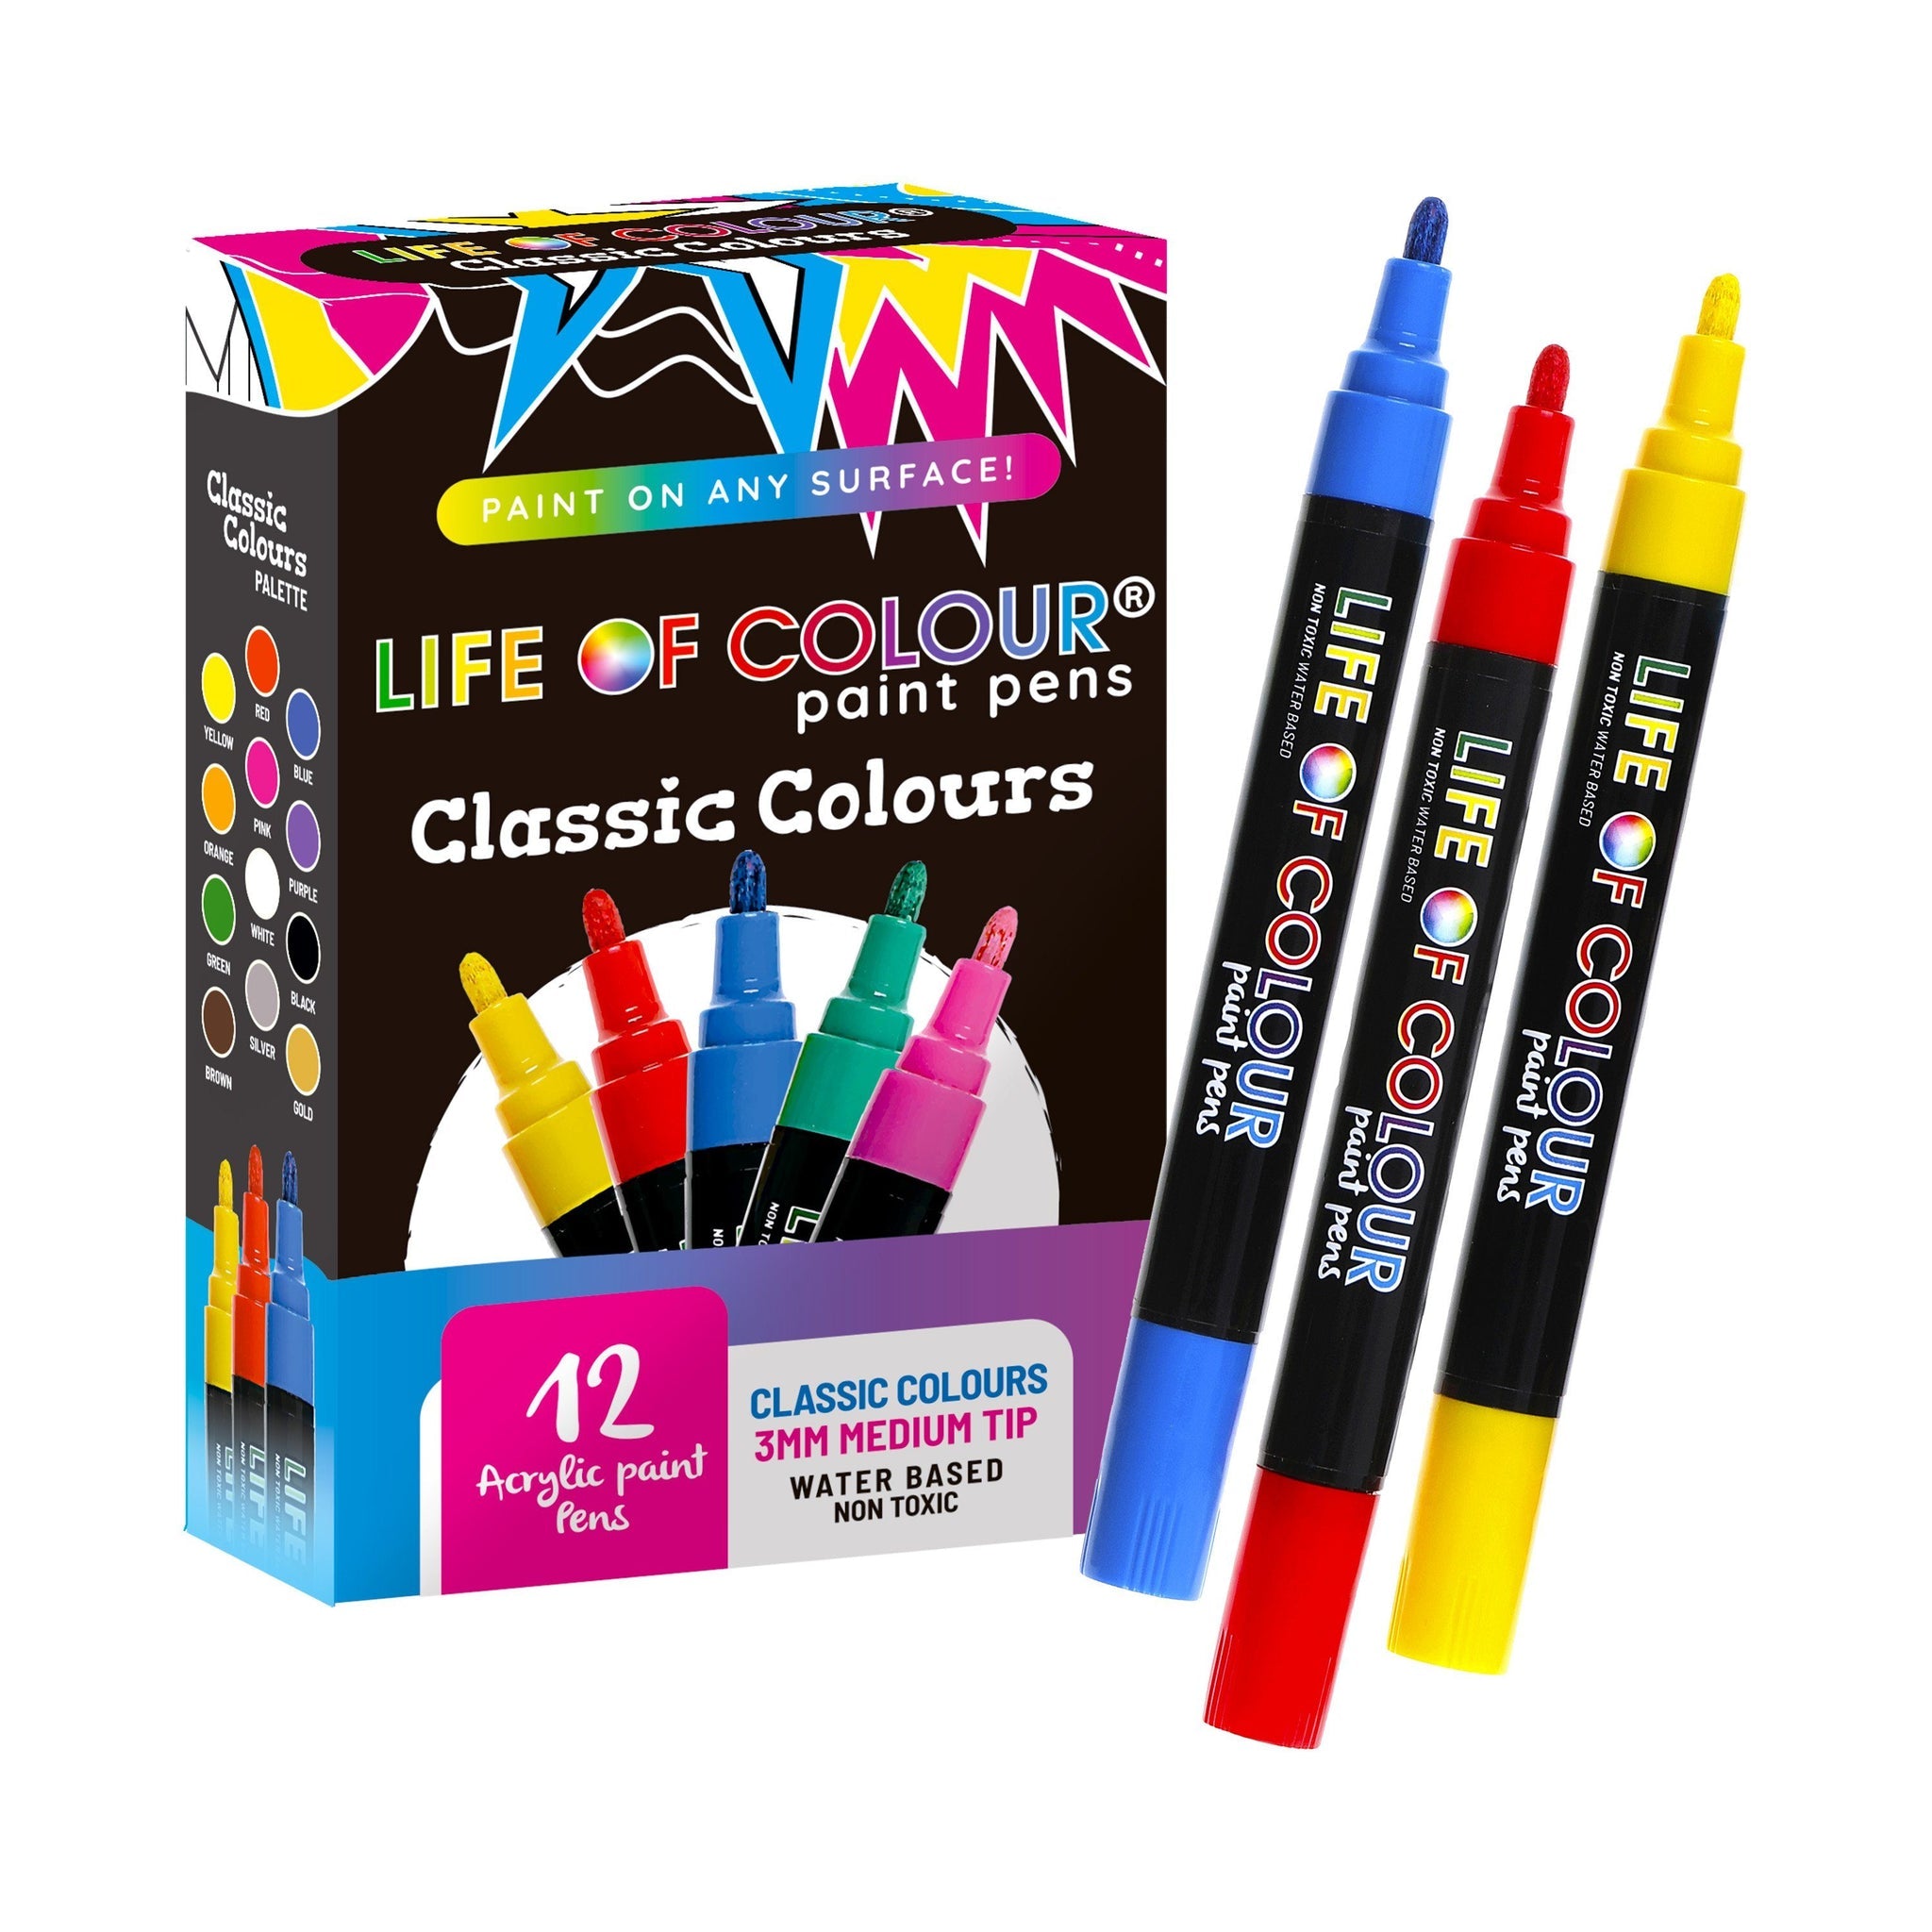 Life of Colour Paint Pens Classic colours